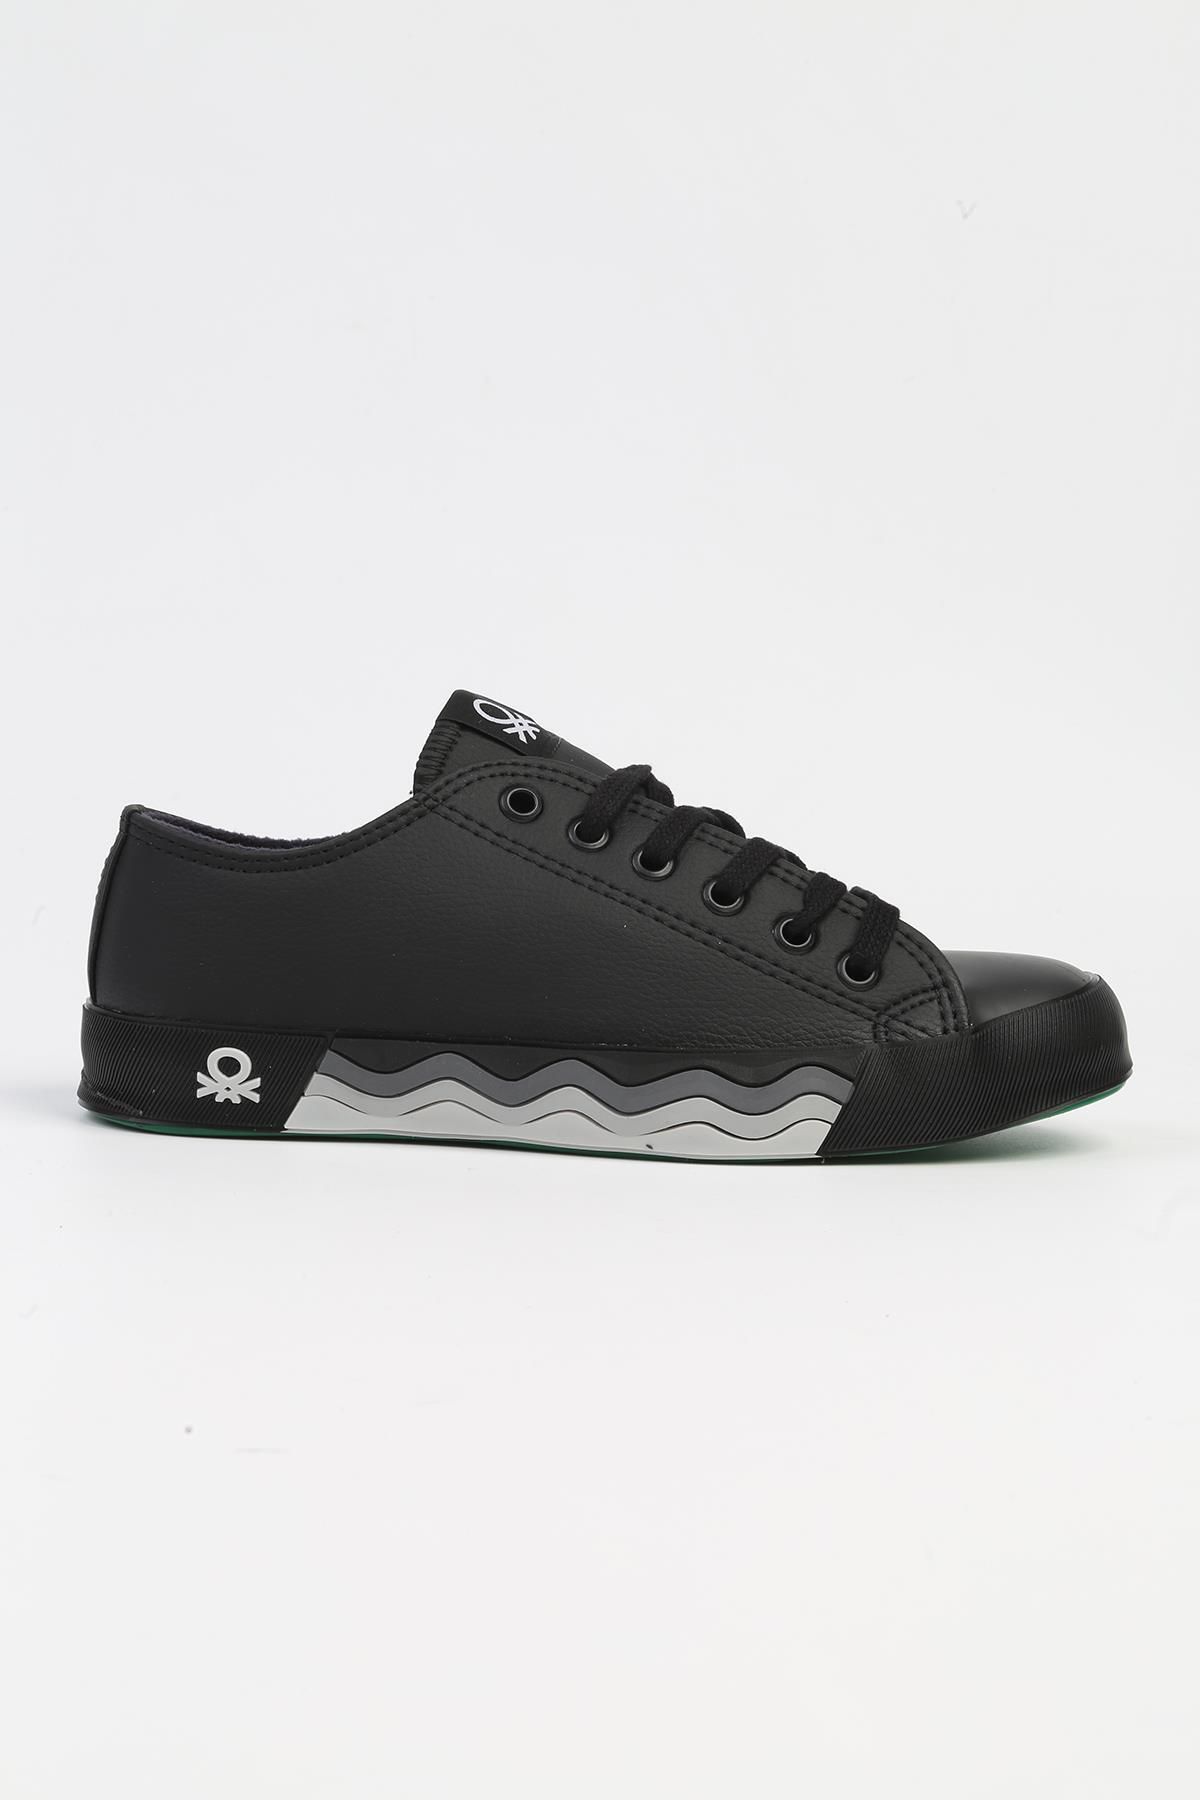 Benetton ® | BN-31045 - 3374 Siyah - Erkek Spor Ayakkabı